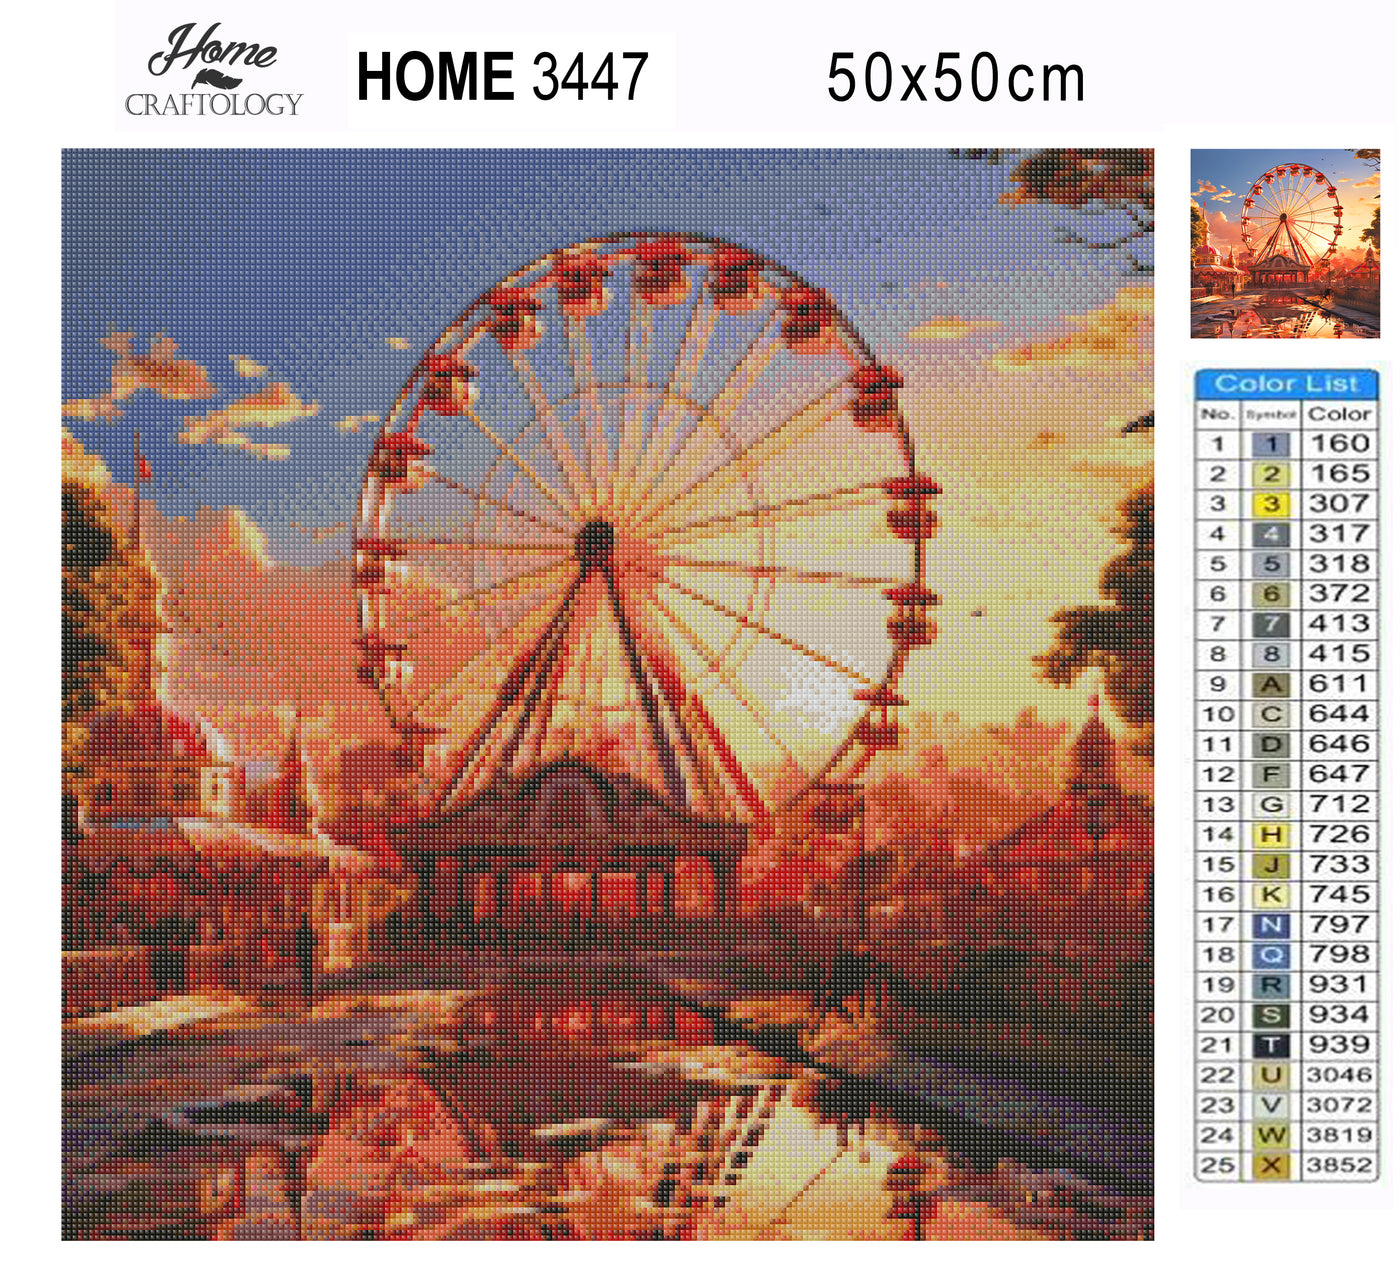 New! Ferris Wheel During Sunset - Premium Diamond Painting Kit